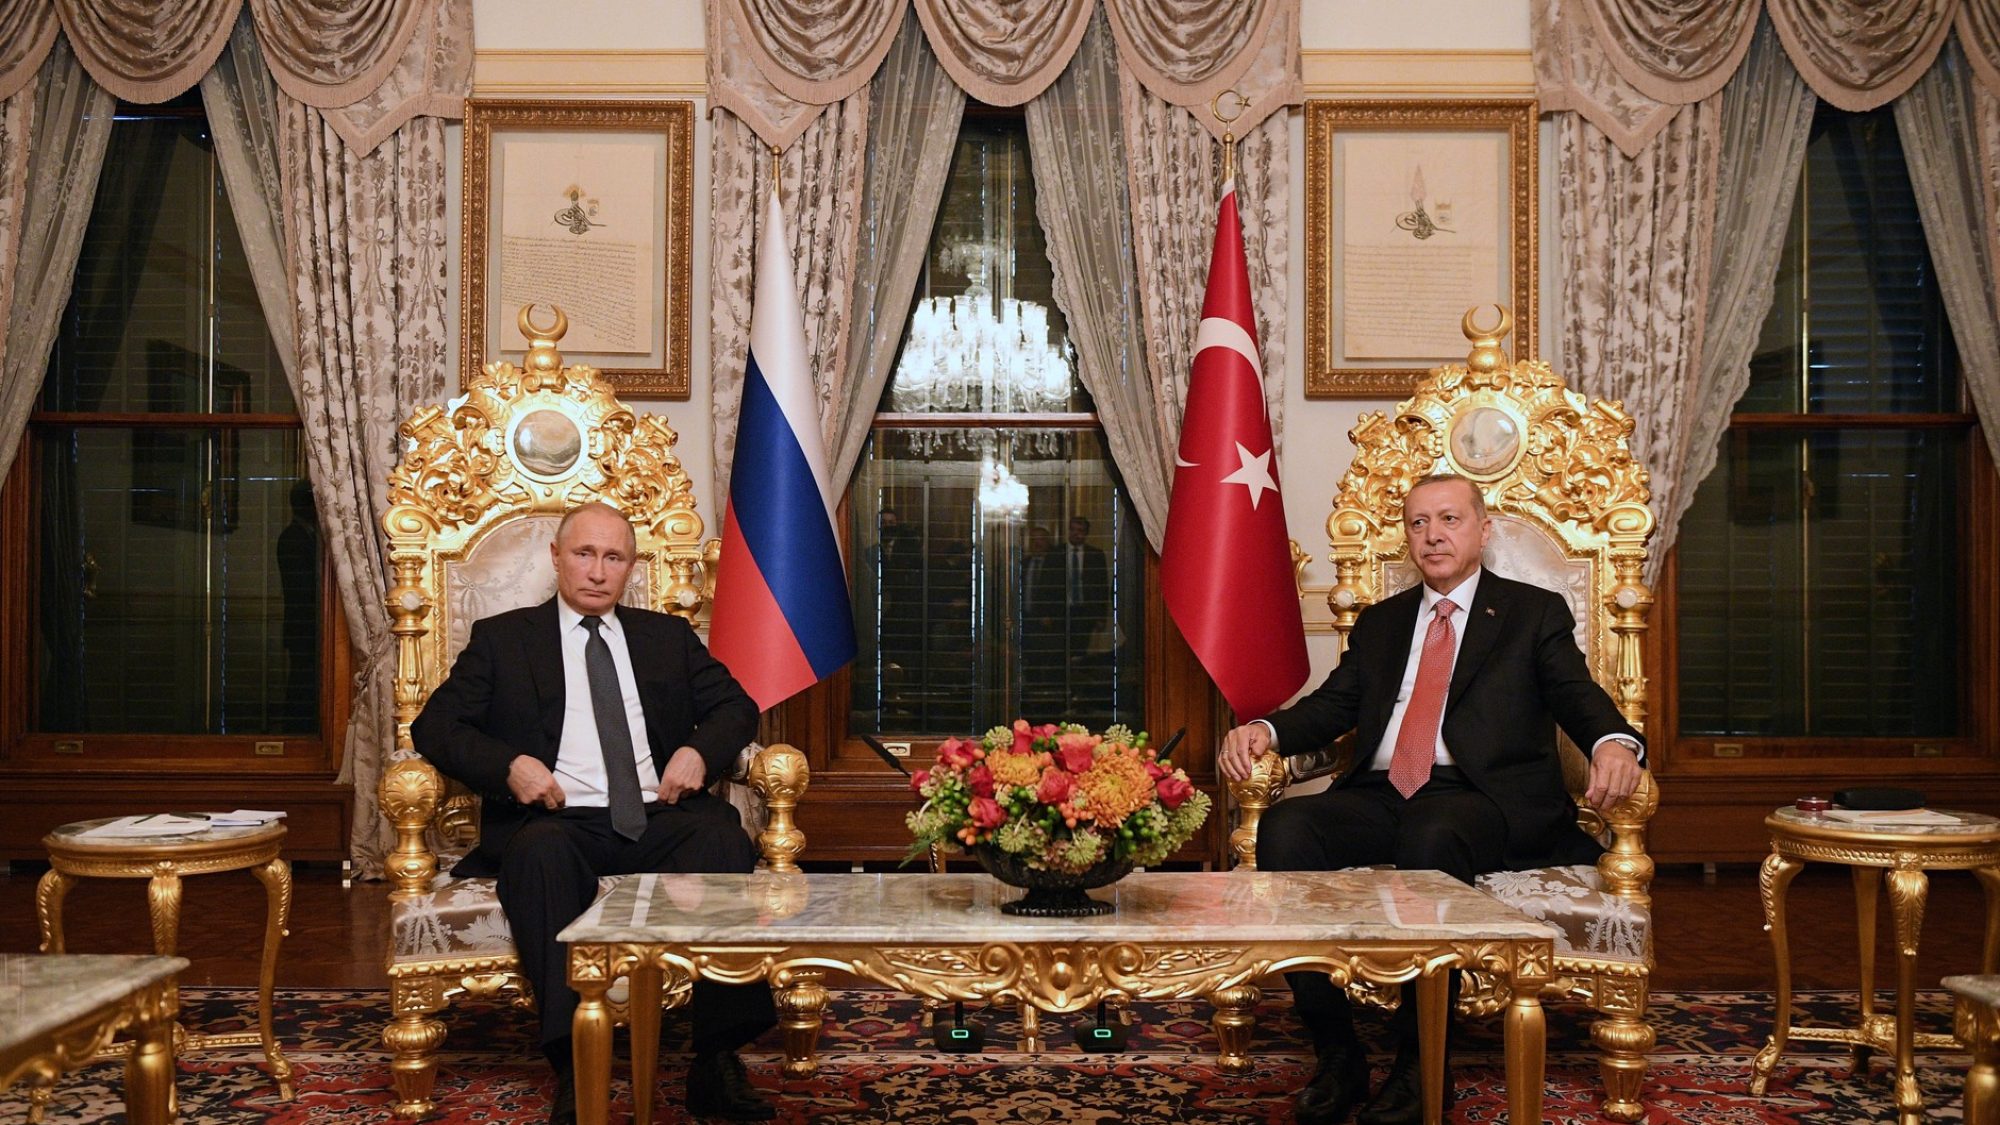 Putin and Erdogan Meeting